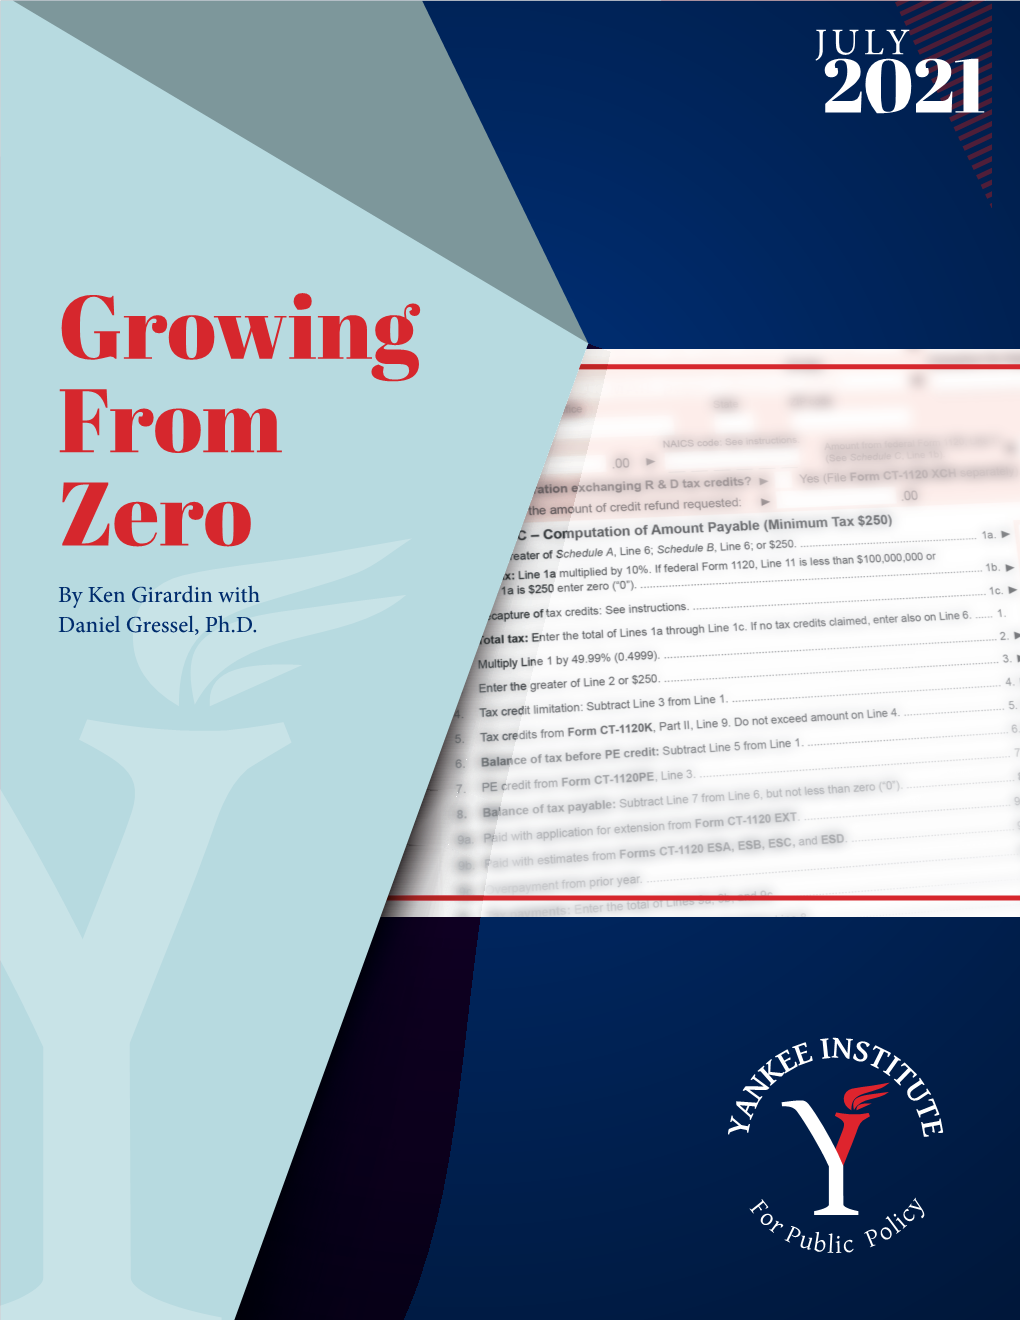 Growing from Zero by Ken Girardin with Daniel Gressel, Ph.D